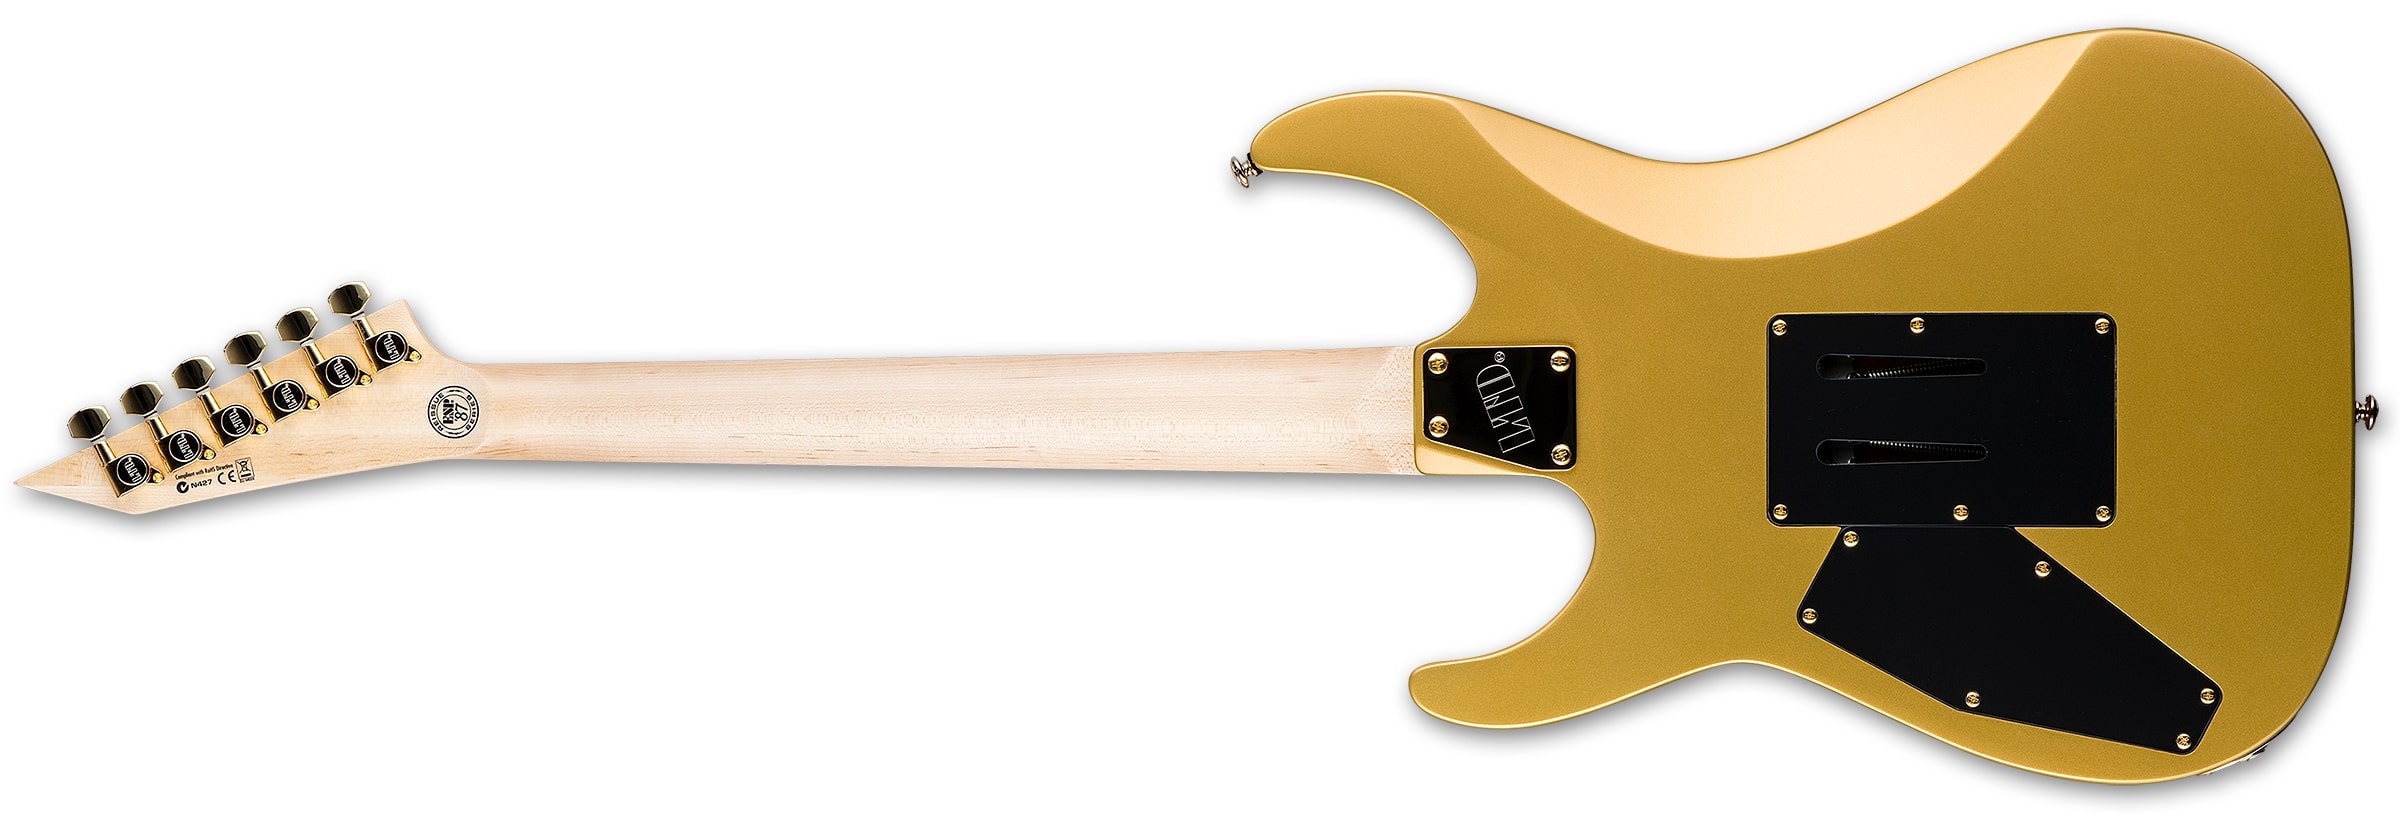 ESP LTD Mirage Deluxe 87 Electric Guitar, Metallic Gold LMIRAGEDX87MGO